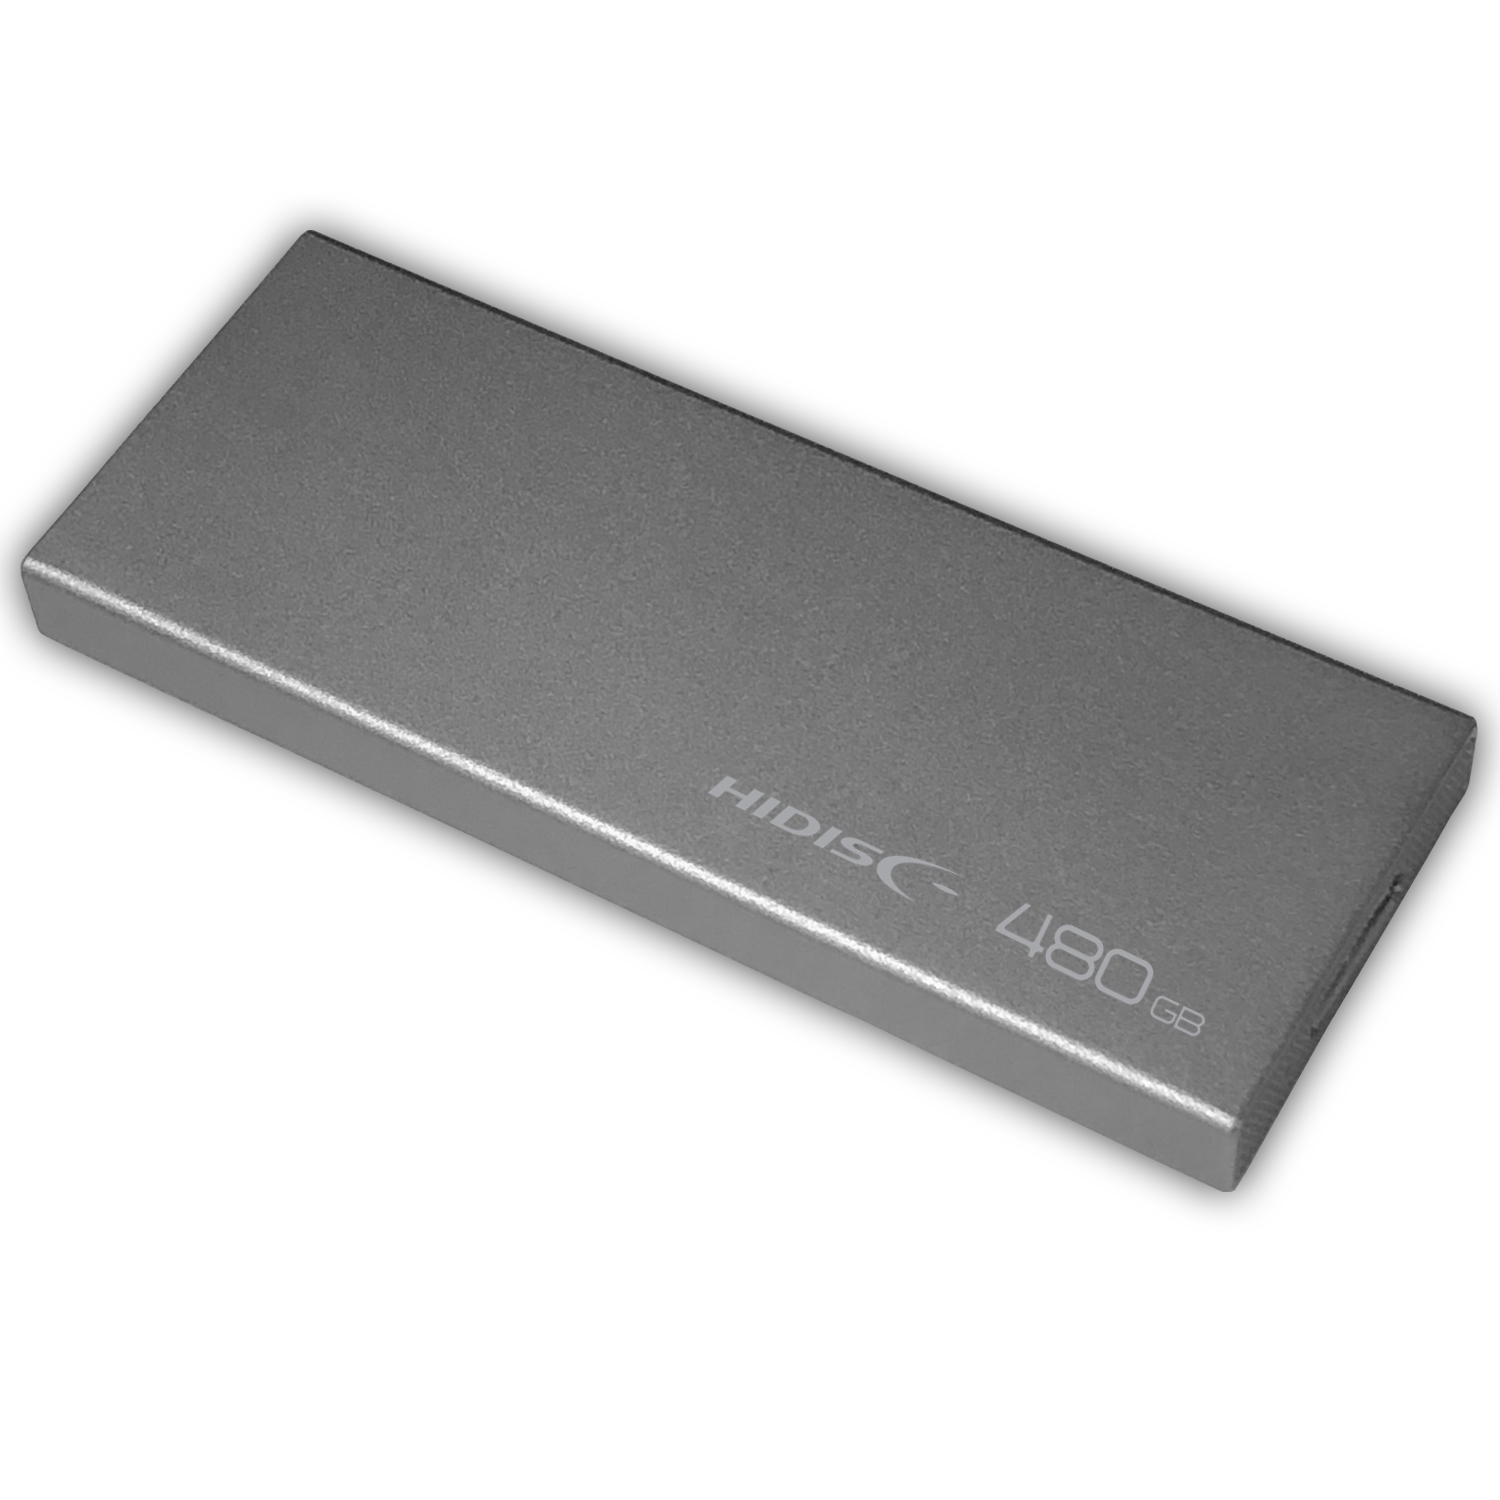 コンパクトサイズ, ハイスピード 外付けSSD 480GB | HIDISC 株式会社